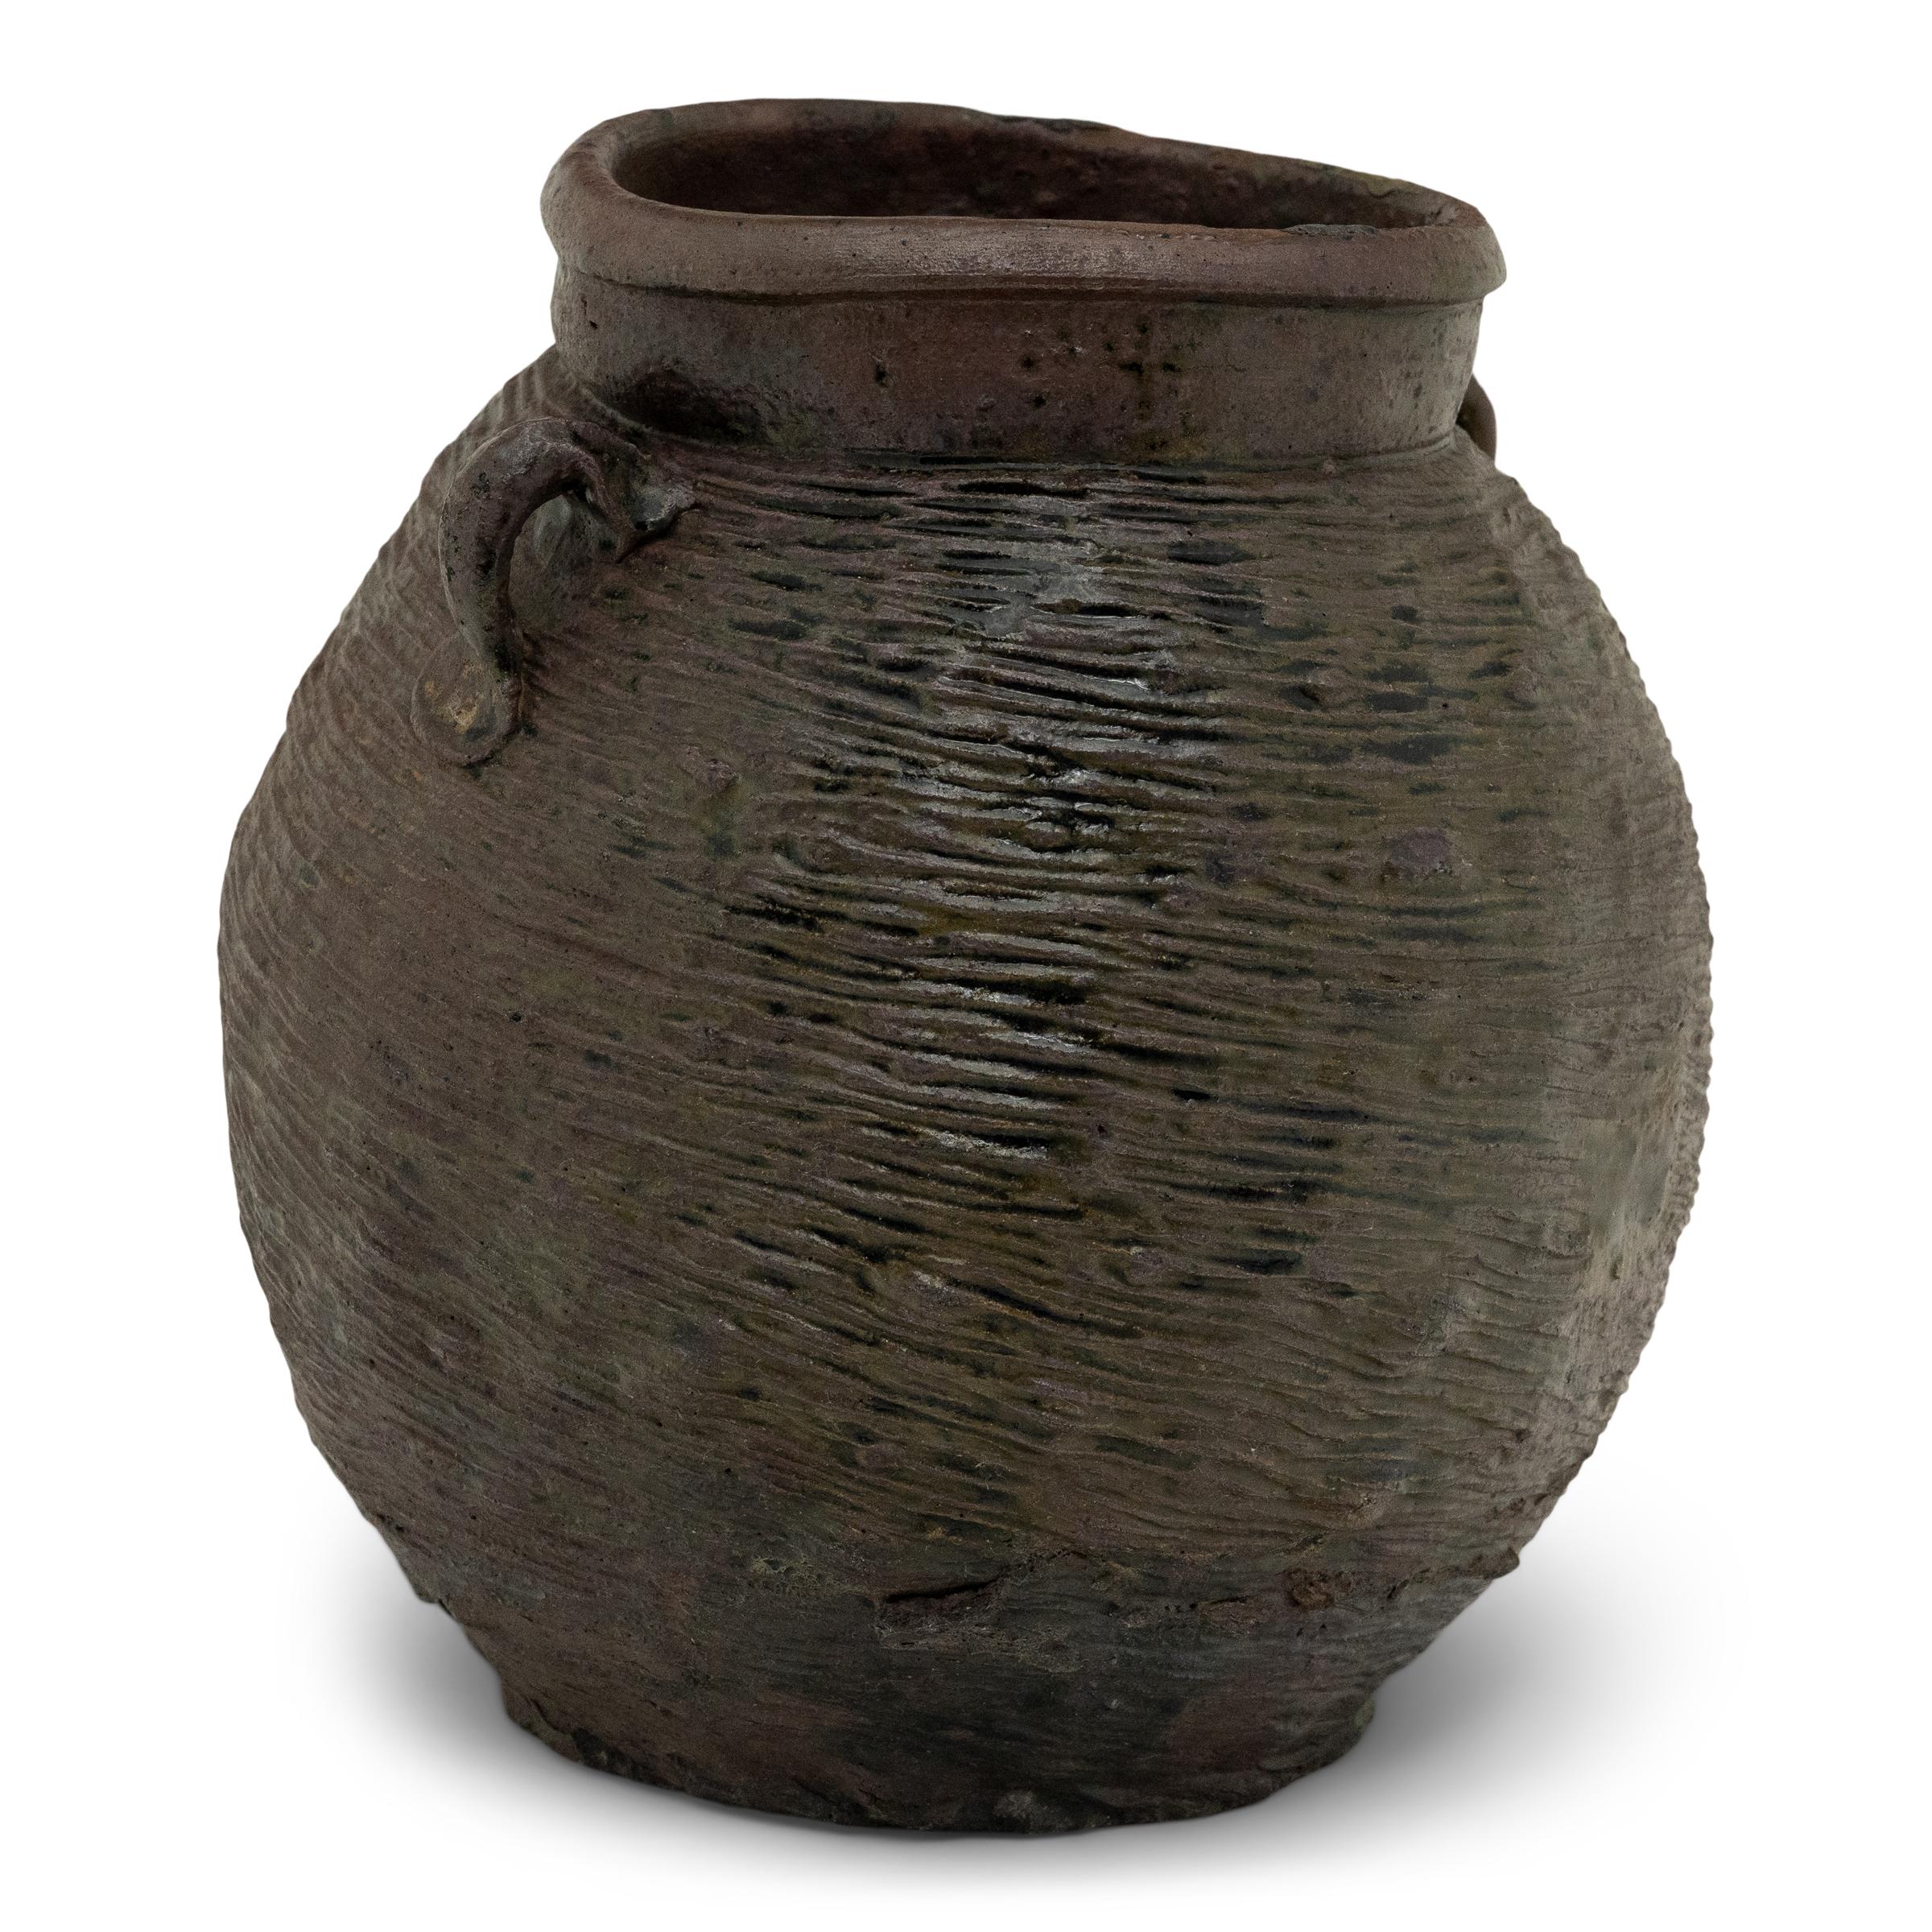 Dieser Steinguttopf aus dem 19. Jahrhundert, der mit einer schön unregelmäßigen braunen Schlickeroberfläche überzogen ist, hatte die bescheidene Aufgabe, in einer Küche der Qing-Dynastie trockene Waren zu lagern. Der gelappte Topf hat eine runde